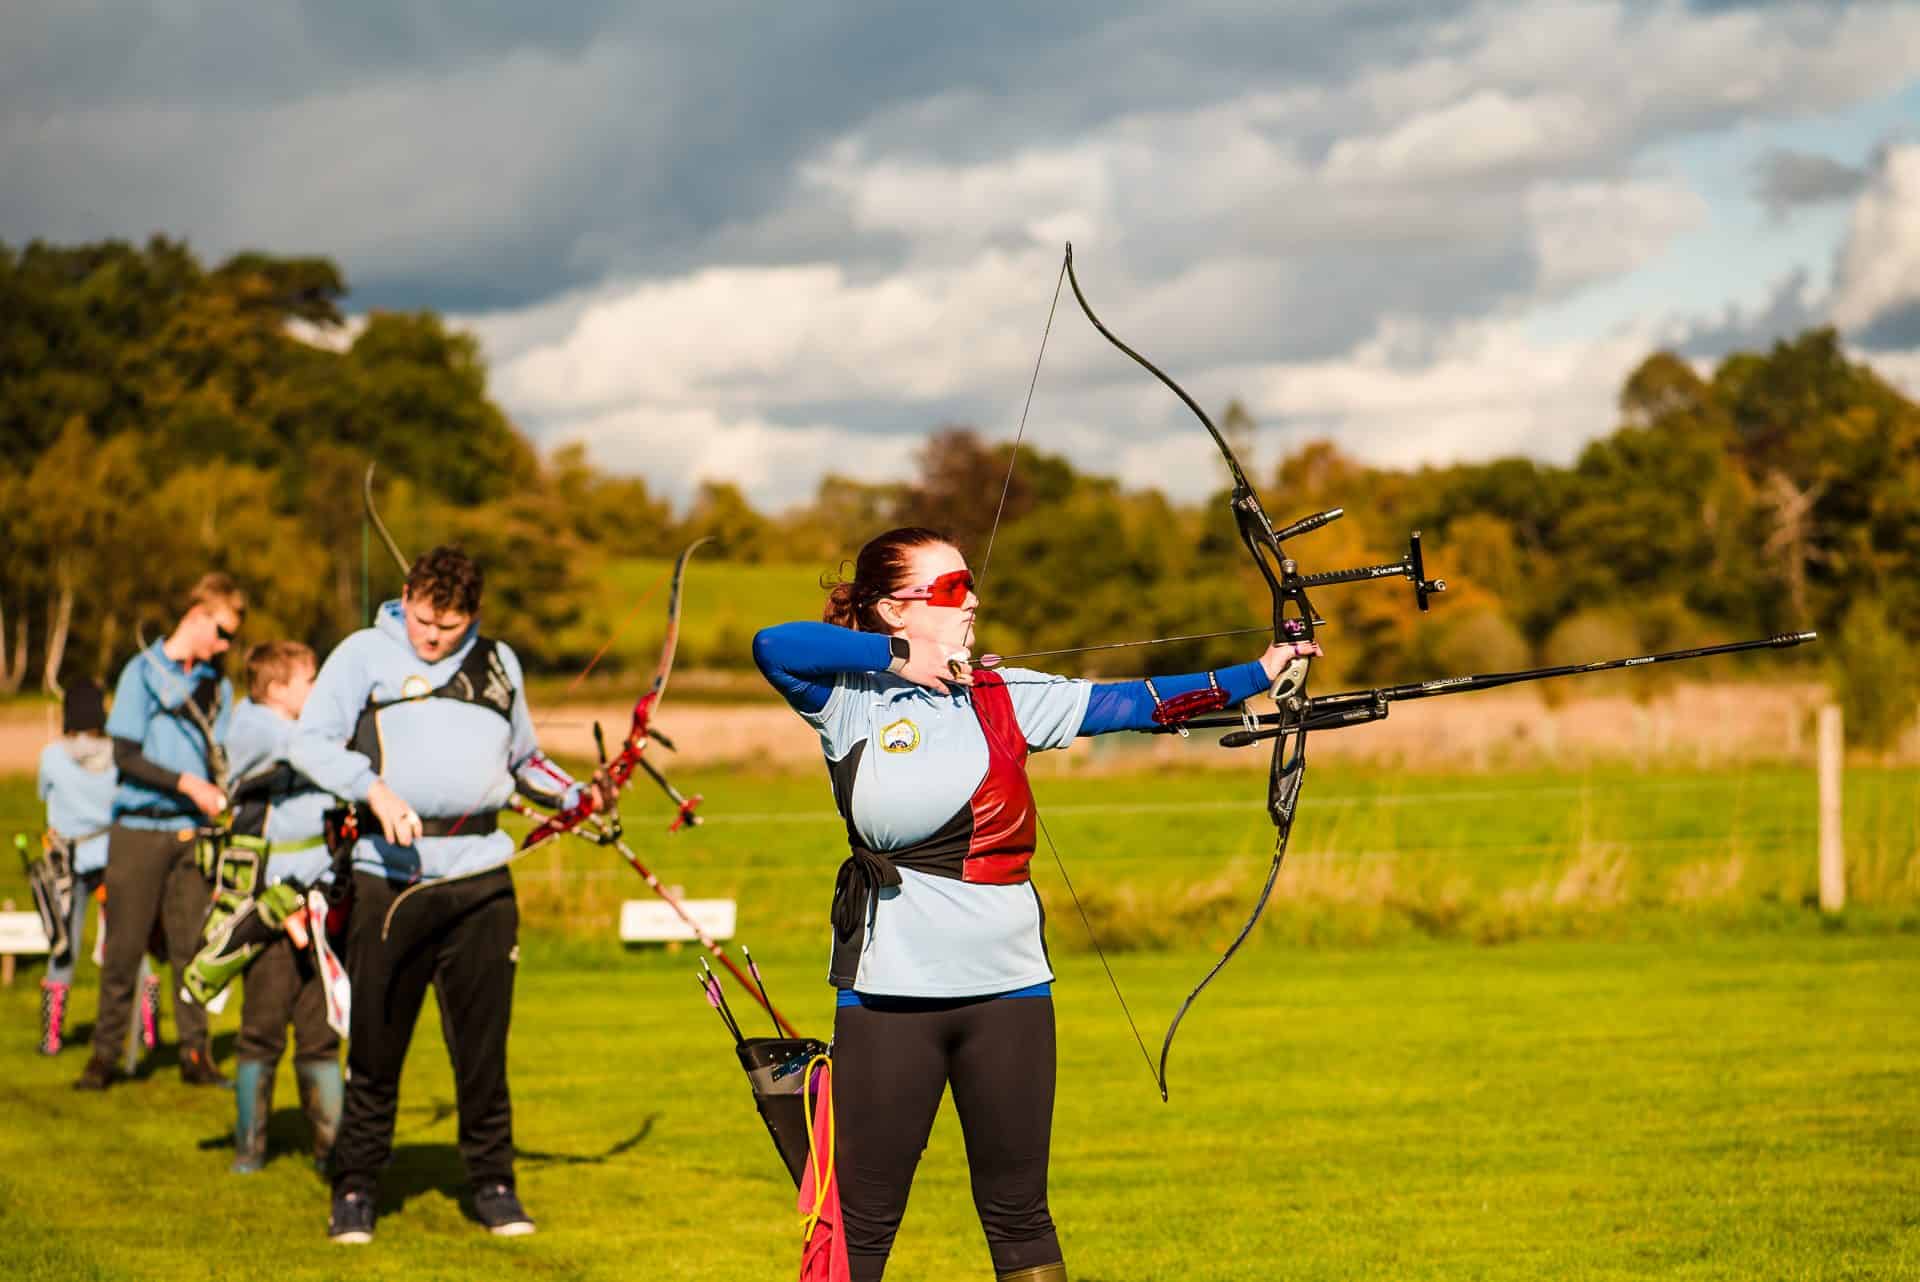 Improve your skills with Archery GB's Progress Award Scheme